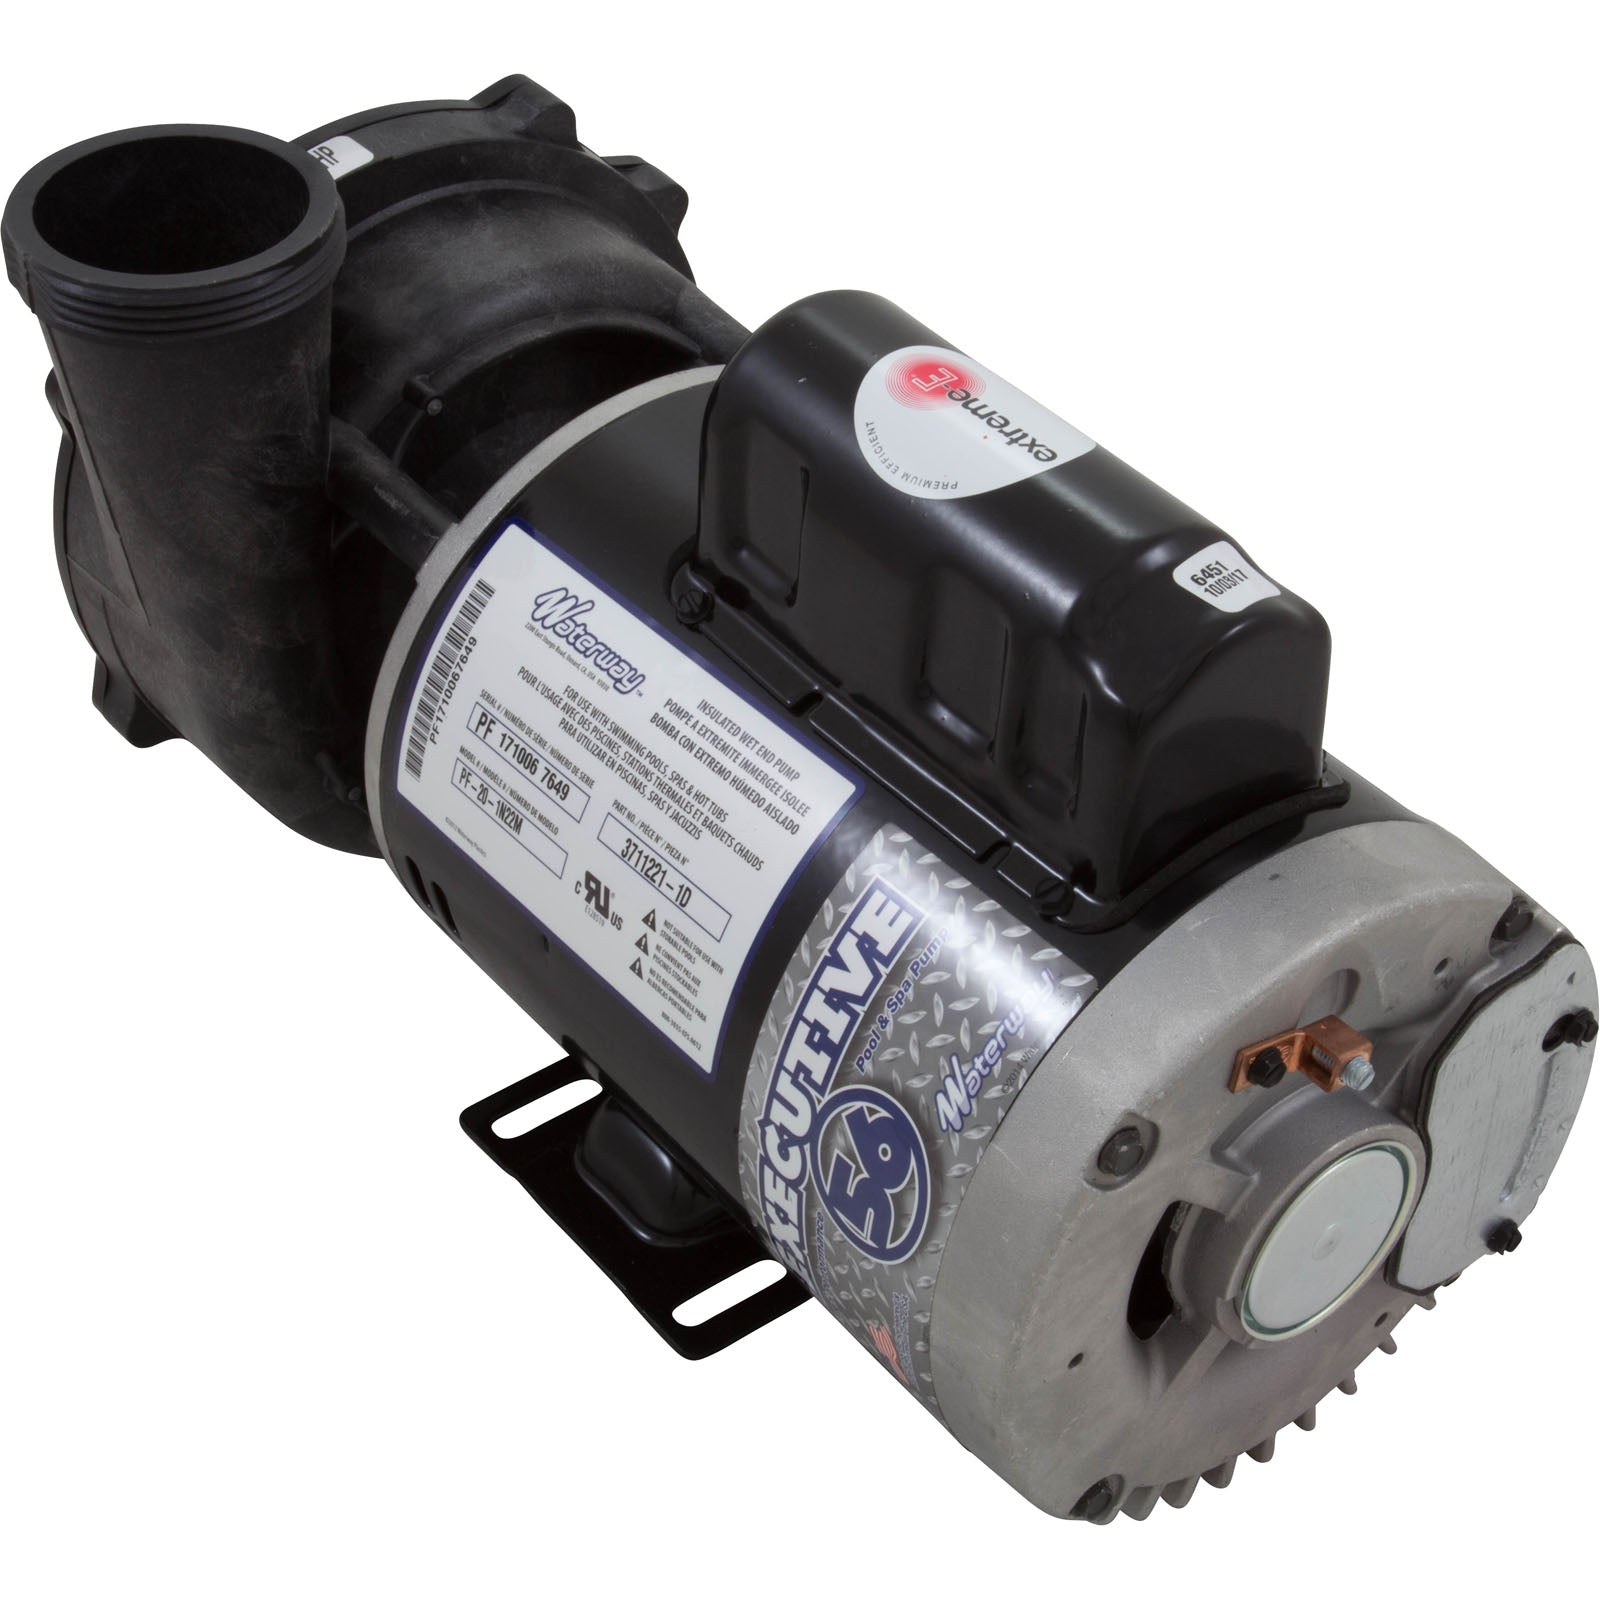 Aquastorm LX [6 hp SPL] [3 hp] Pump 10/3.5 amp, 2 speed 3721221-1D